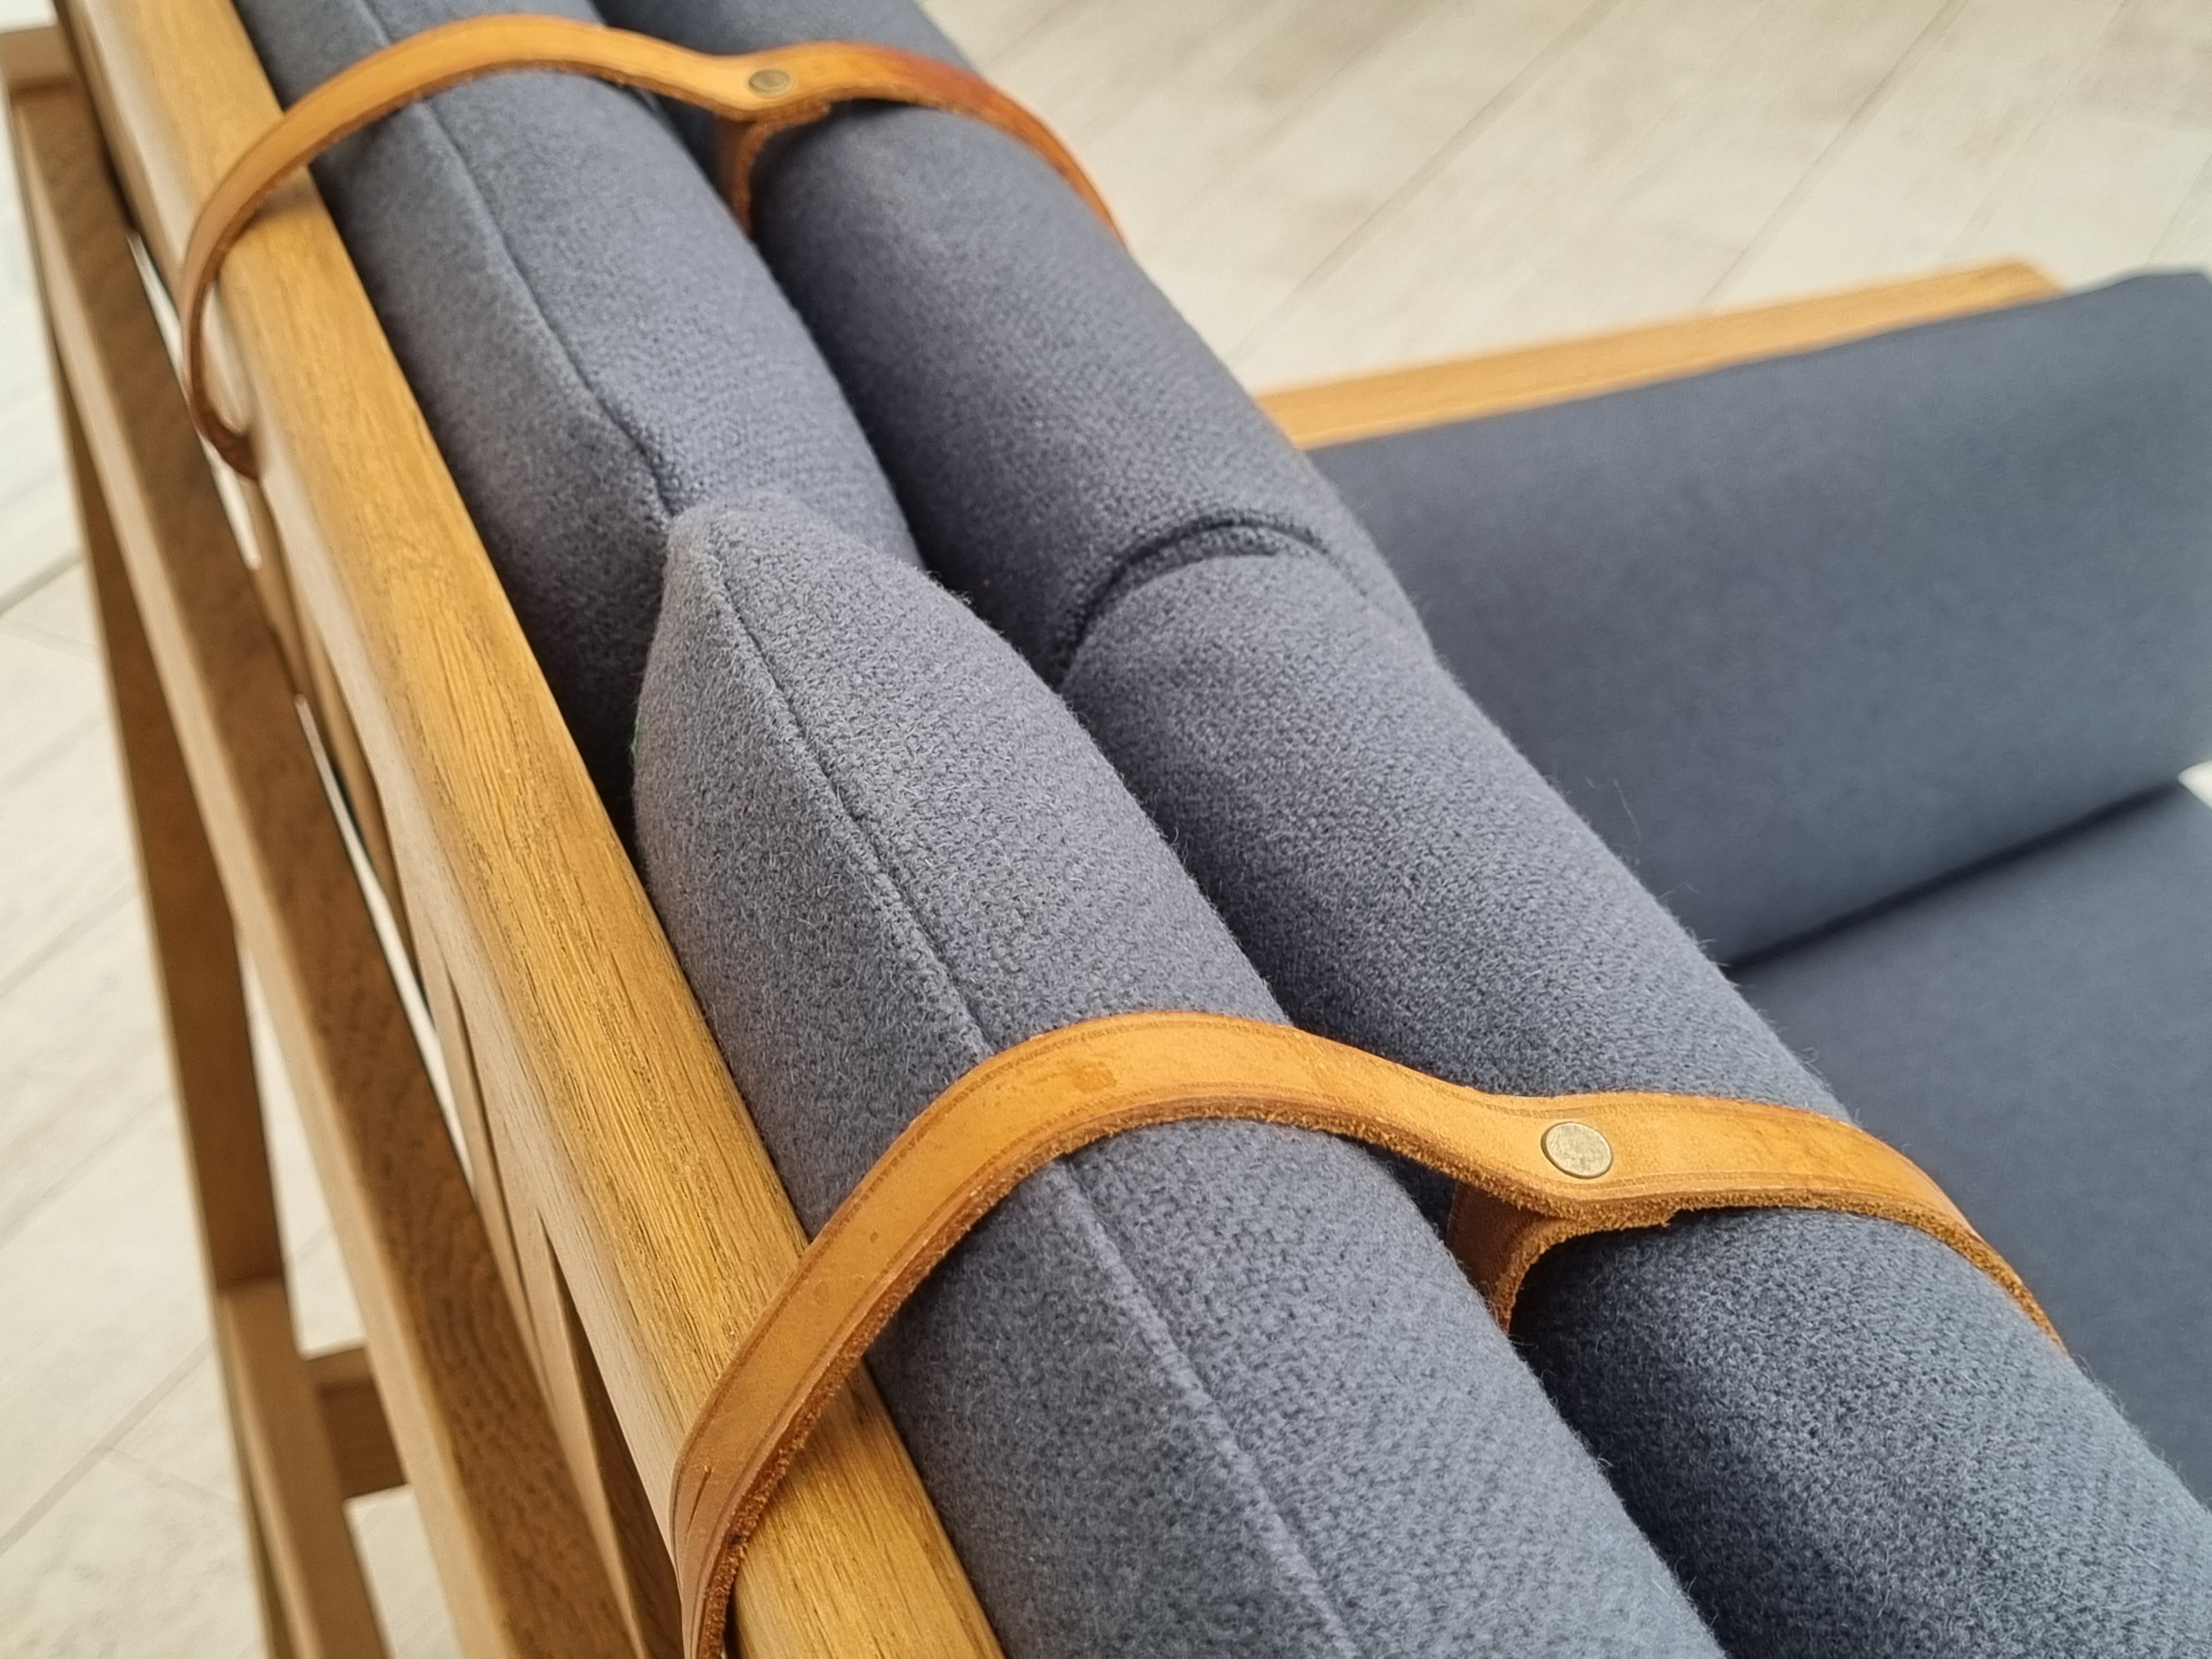 70erne, Dansk design af Børge Mogensen, renoveret sofa, model 2252, egtræ, møbeluld